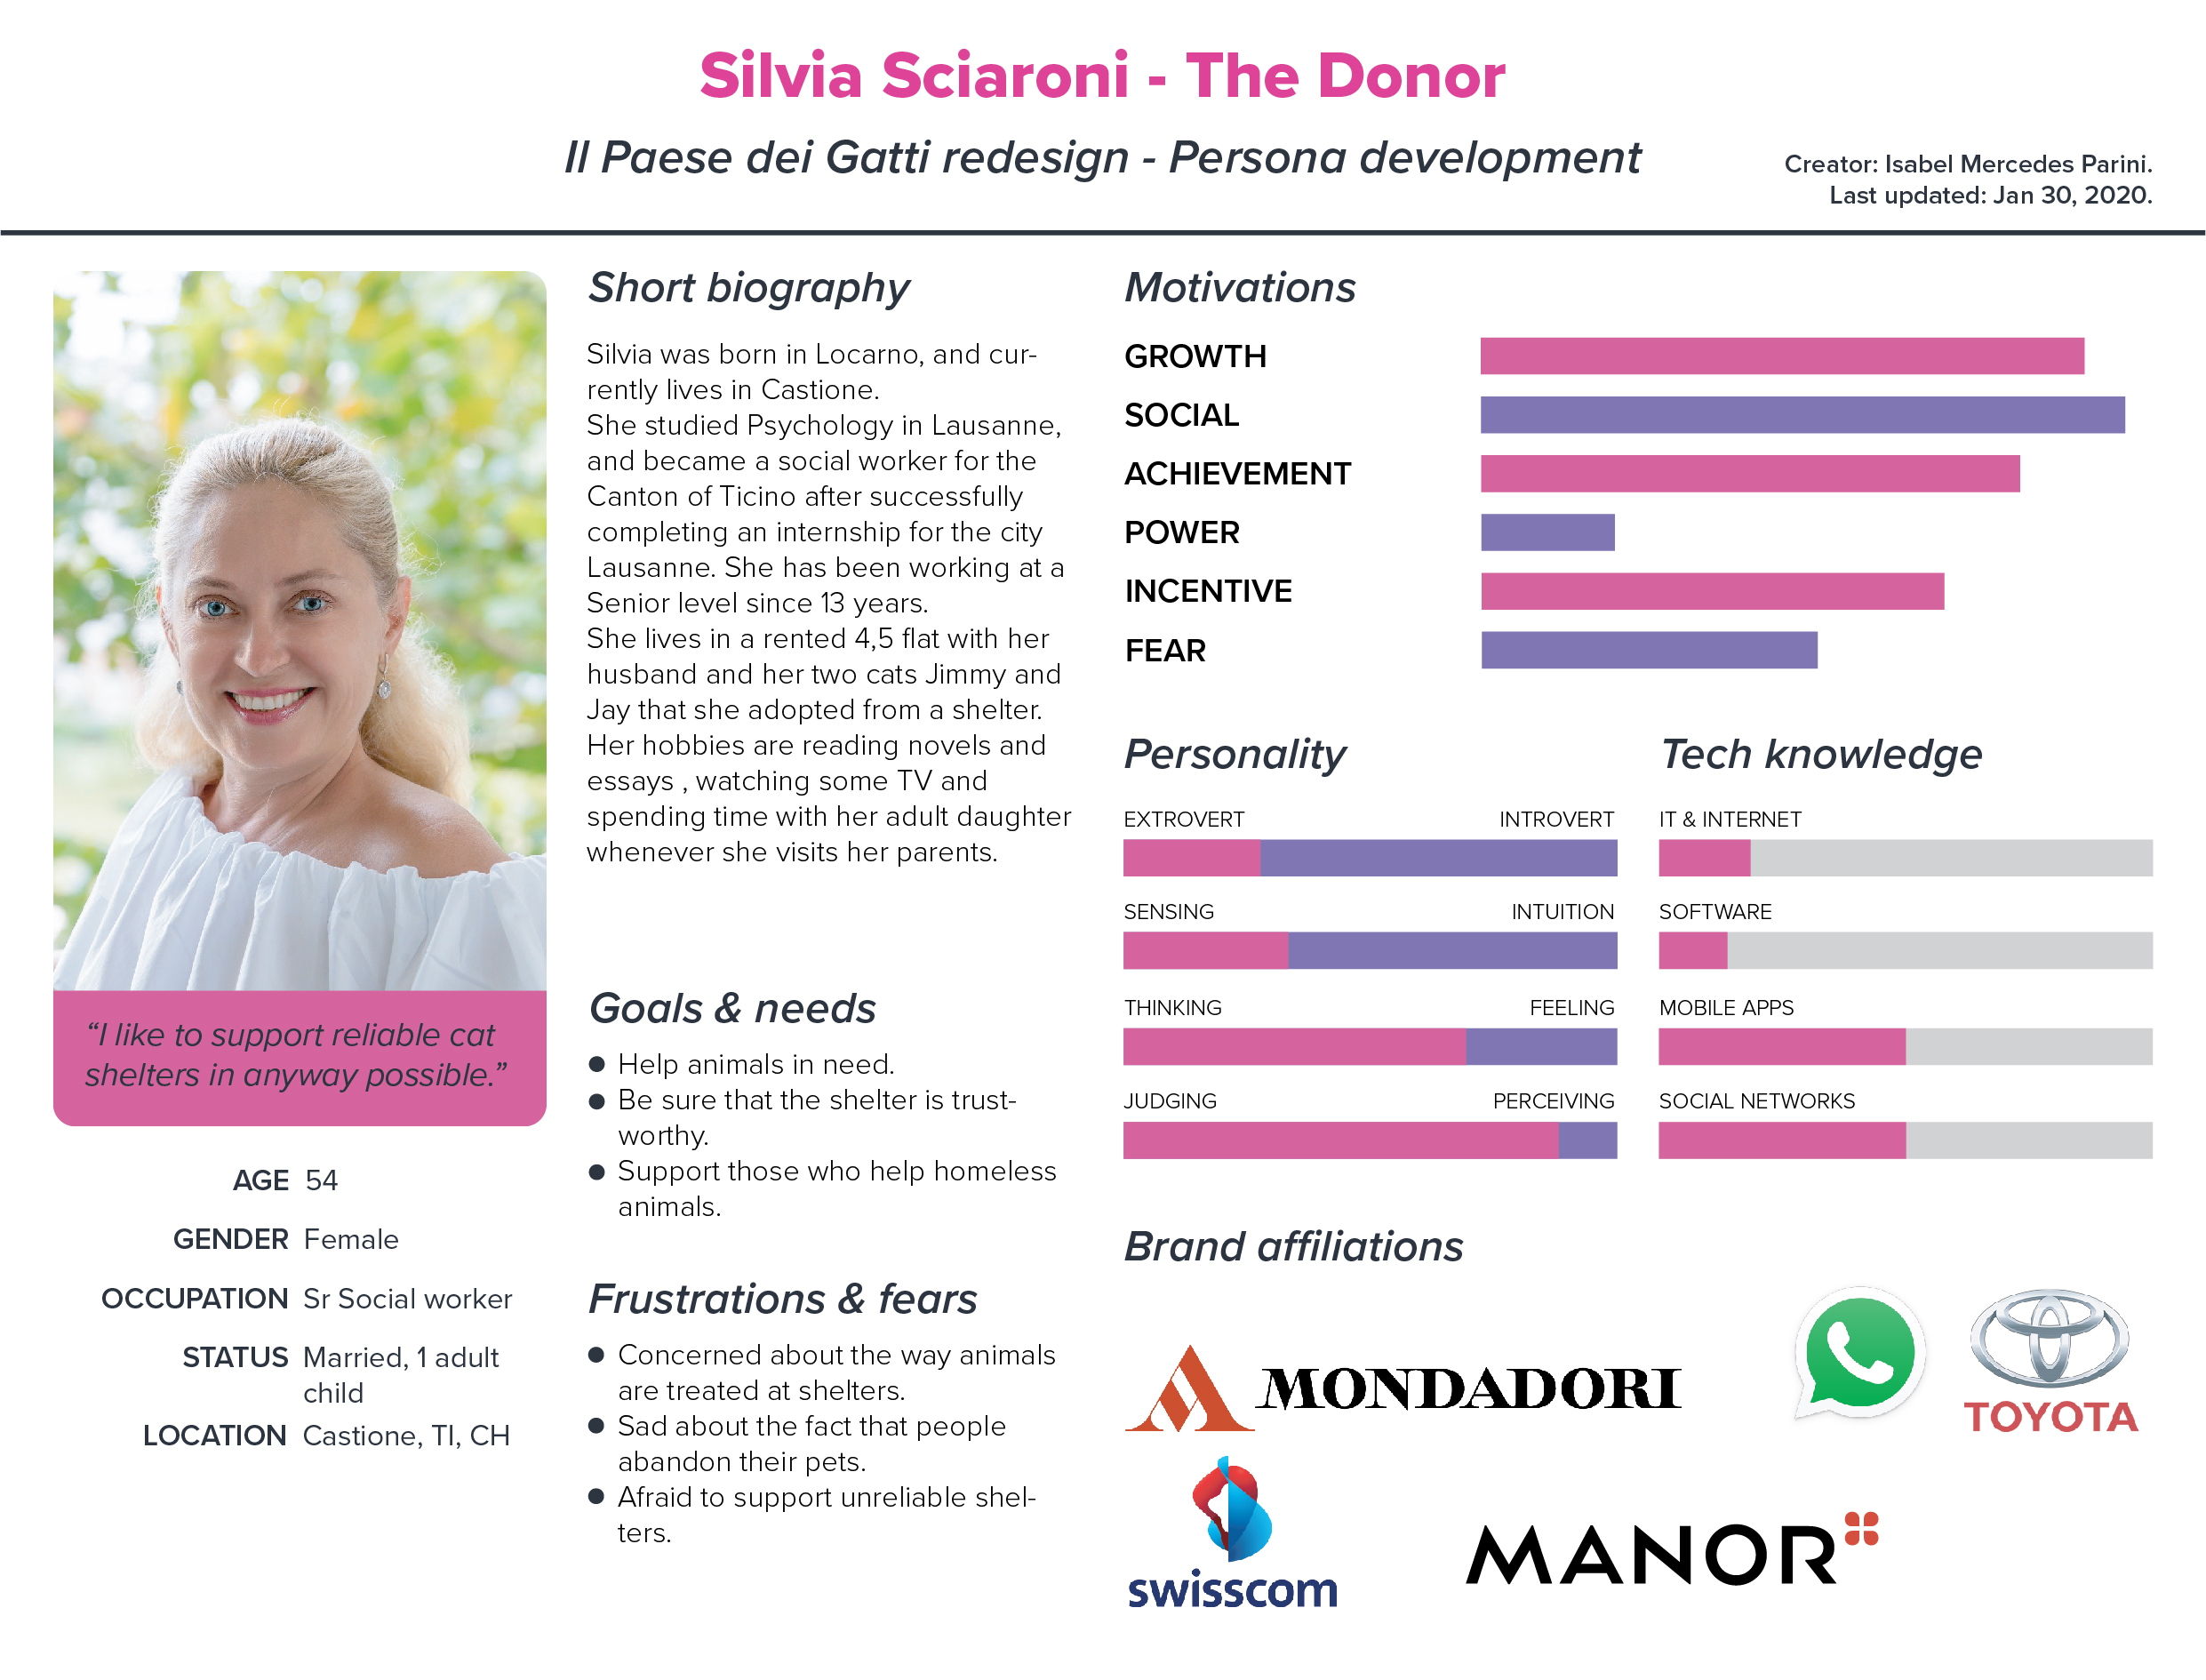 persona_development_v20200130_Silvia-Sciaroni-The-Donor